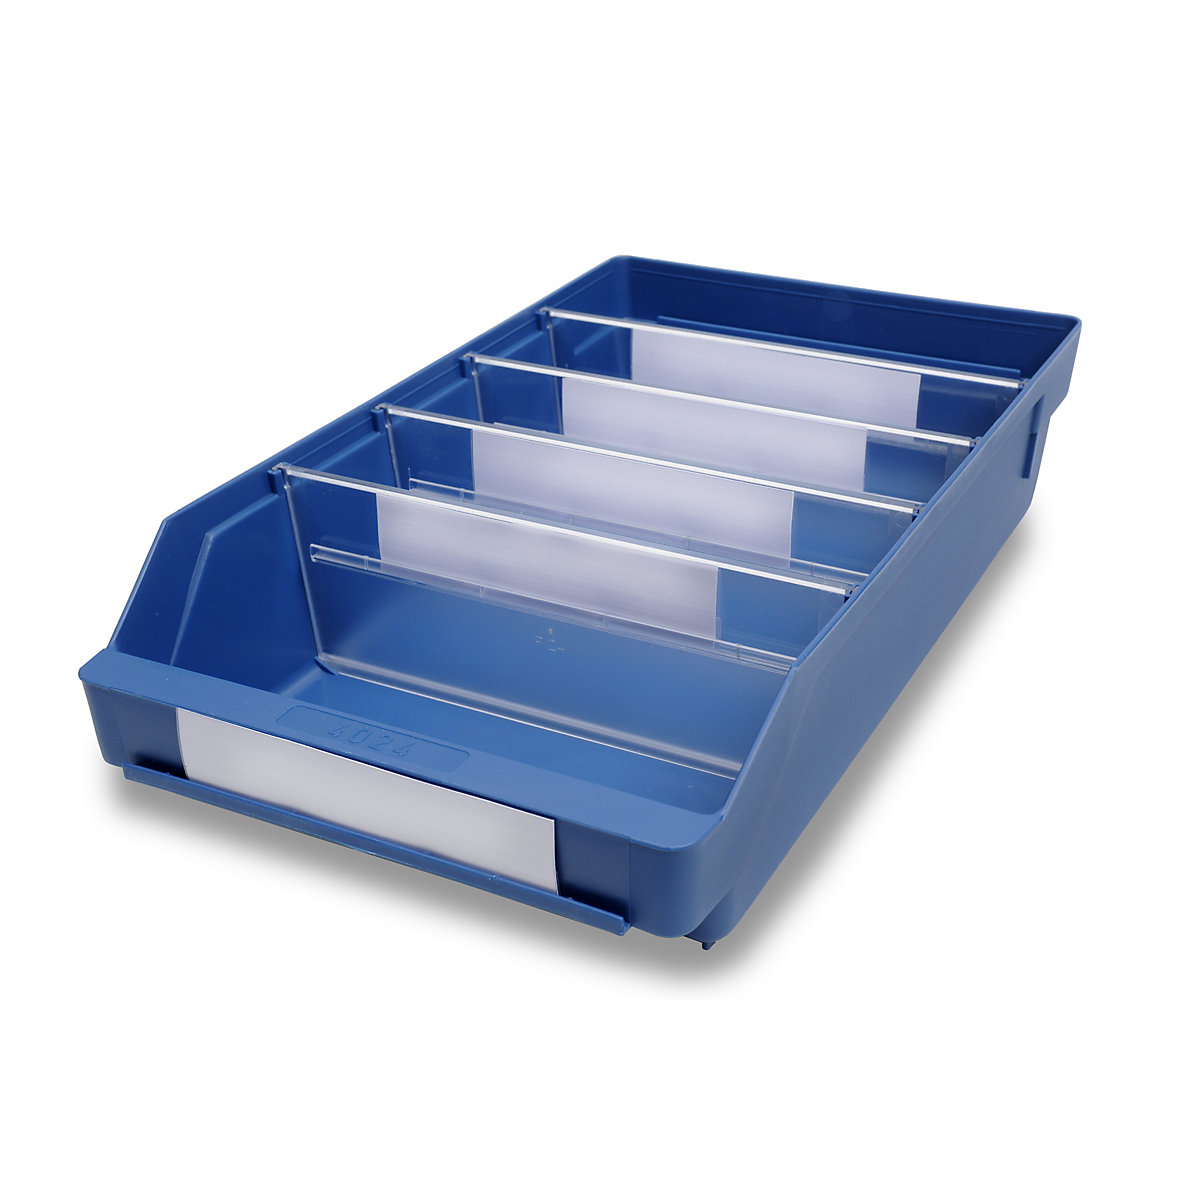 STEMO Regalkasten aus hochschlagfestem Polypropylen, blau, LxBxH 400 x 240 x 95 mm, VE 15 Stk